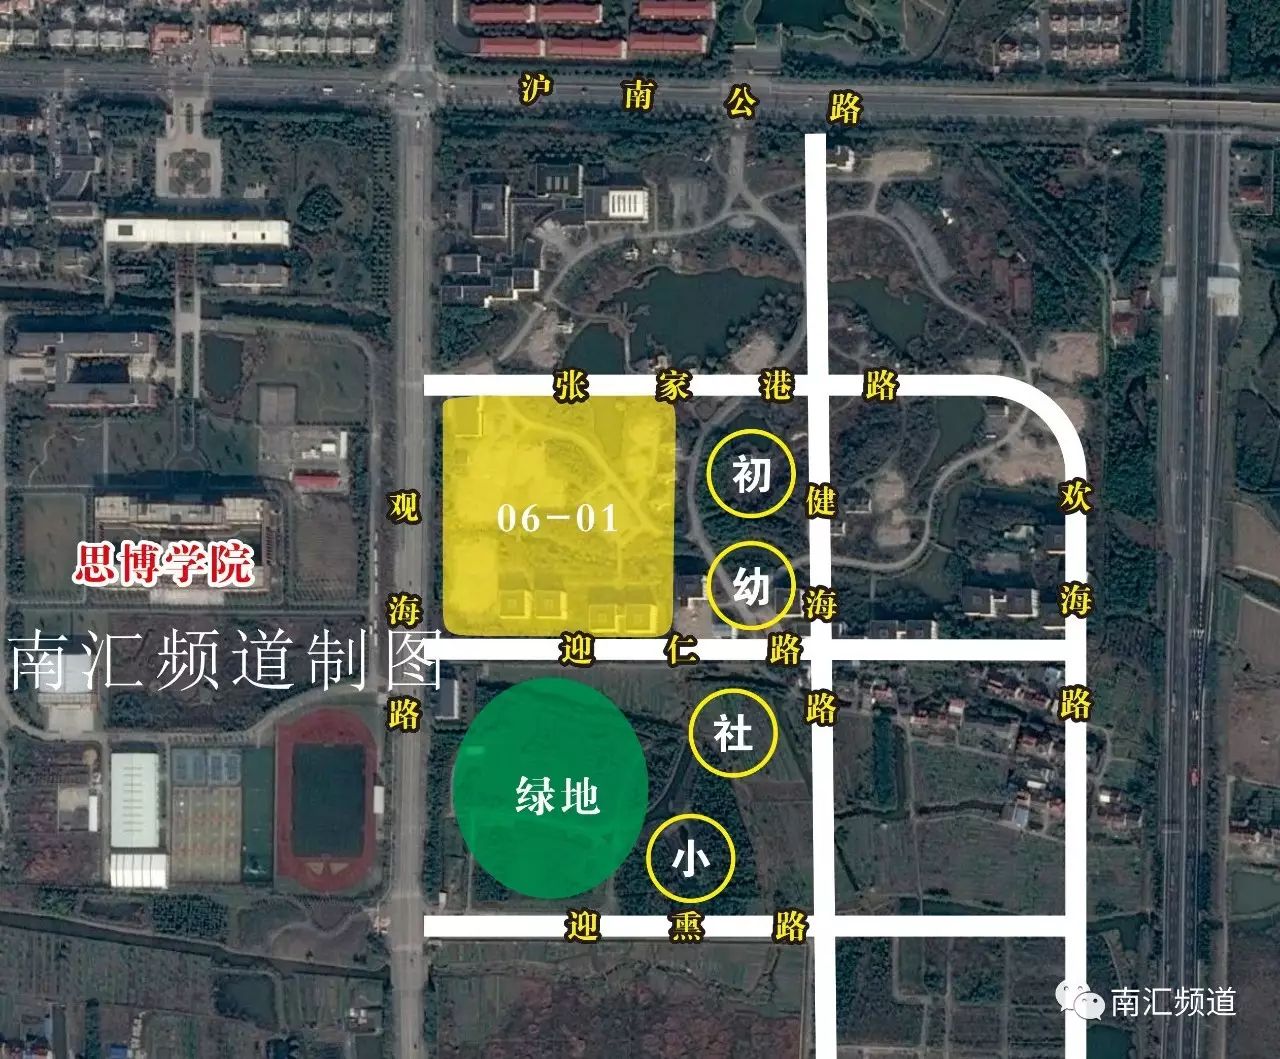 惠南镇城南黄路一动迁安置房设计方案正式公示